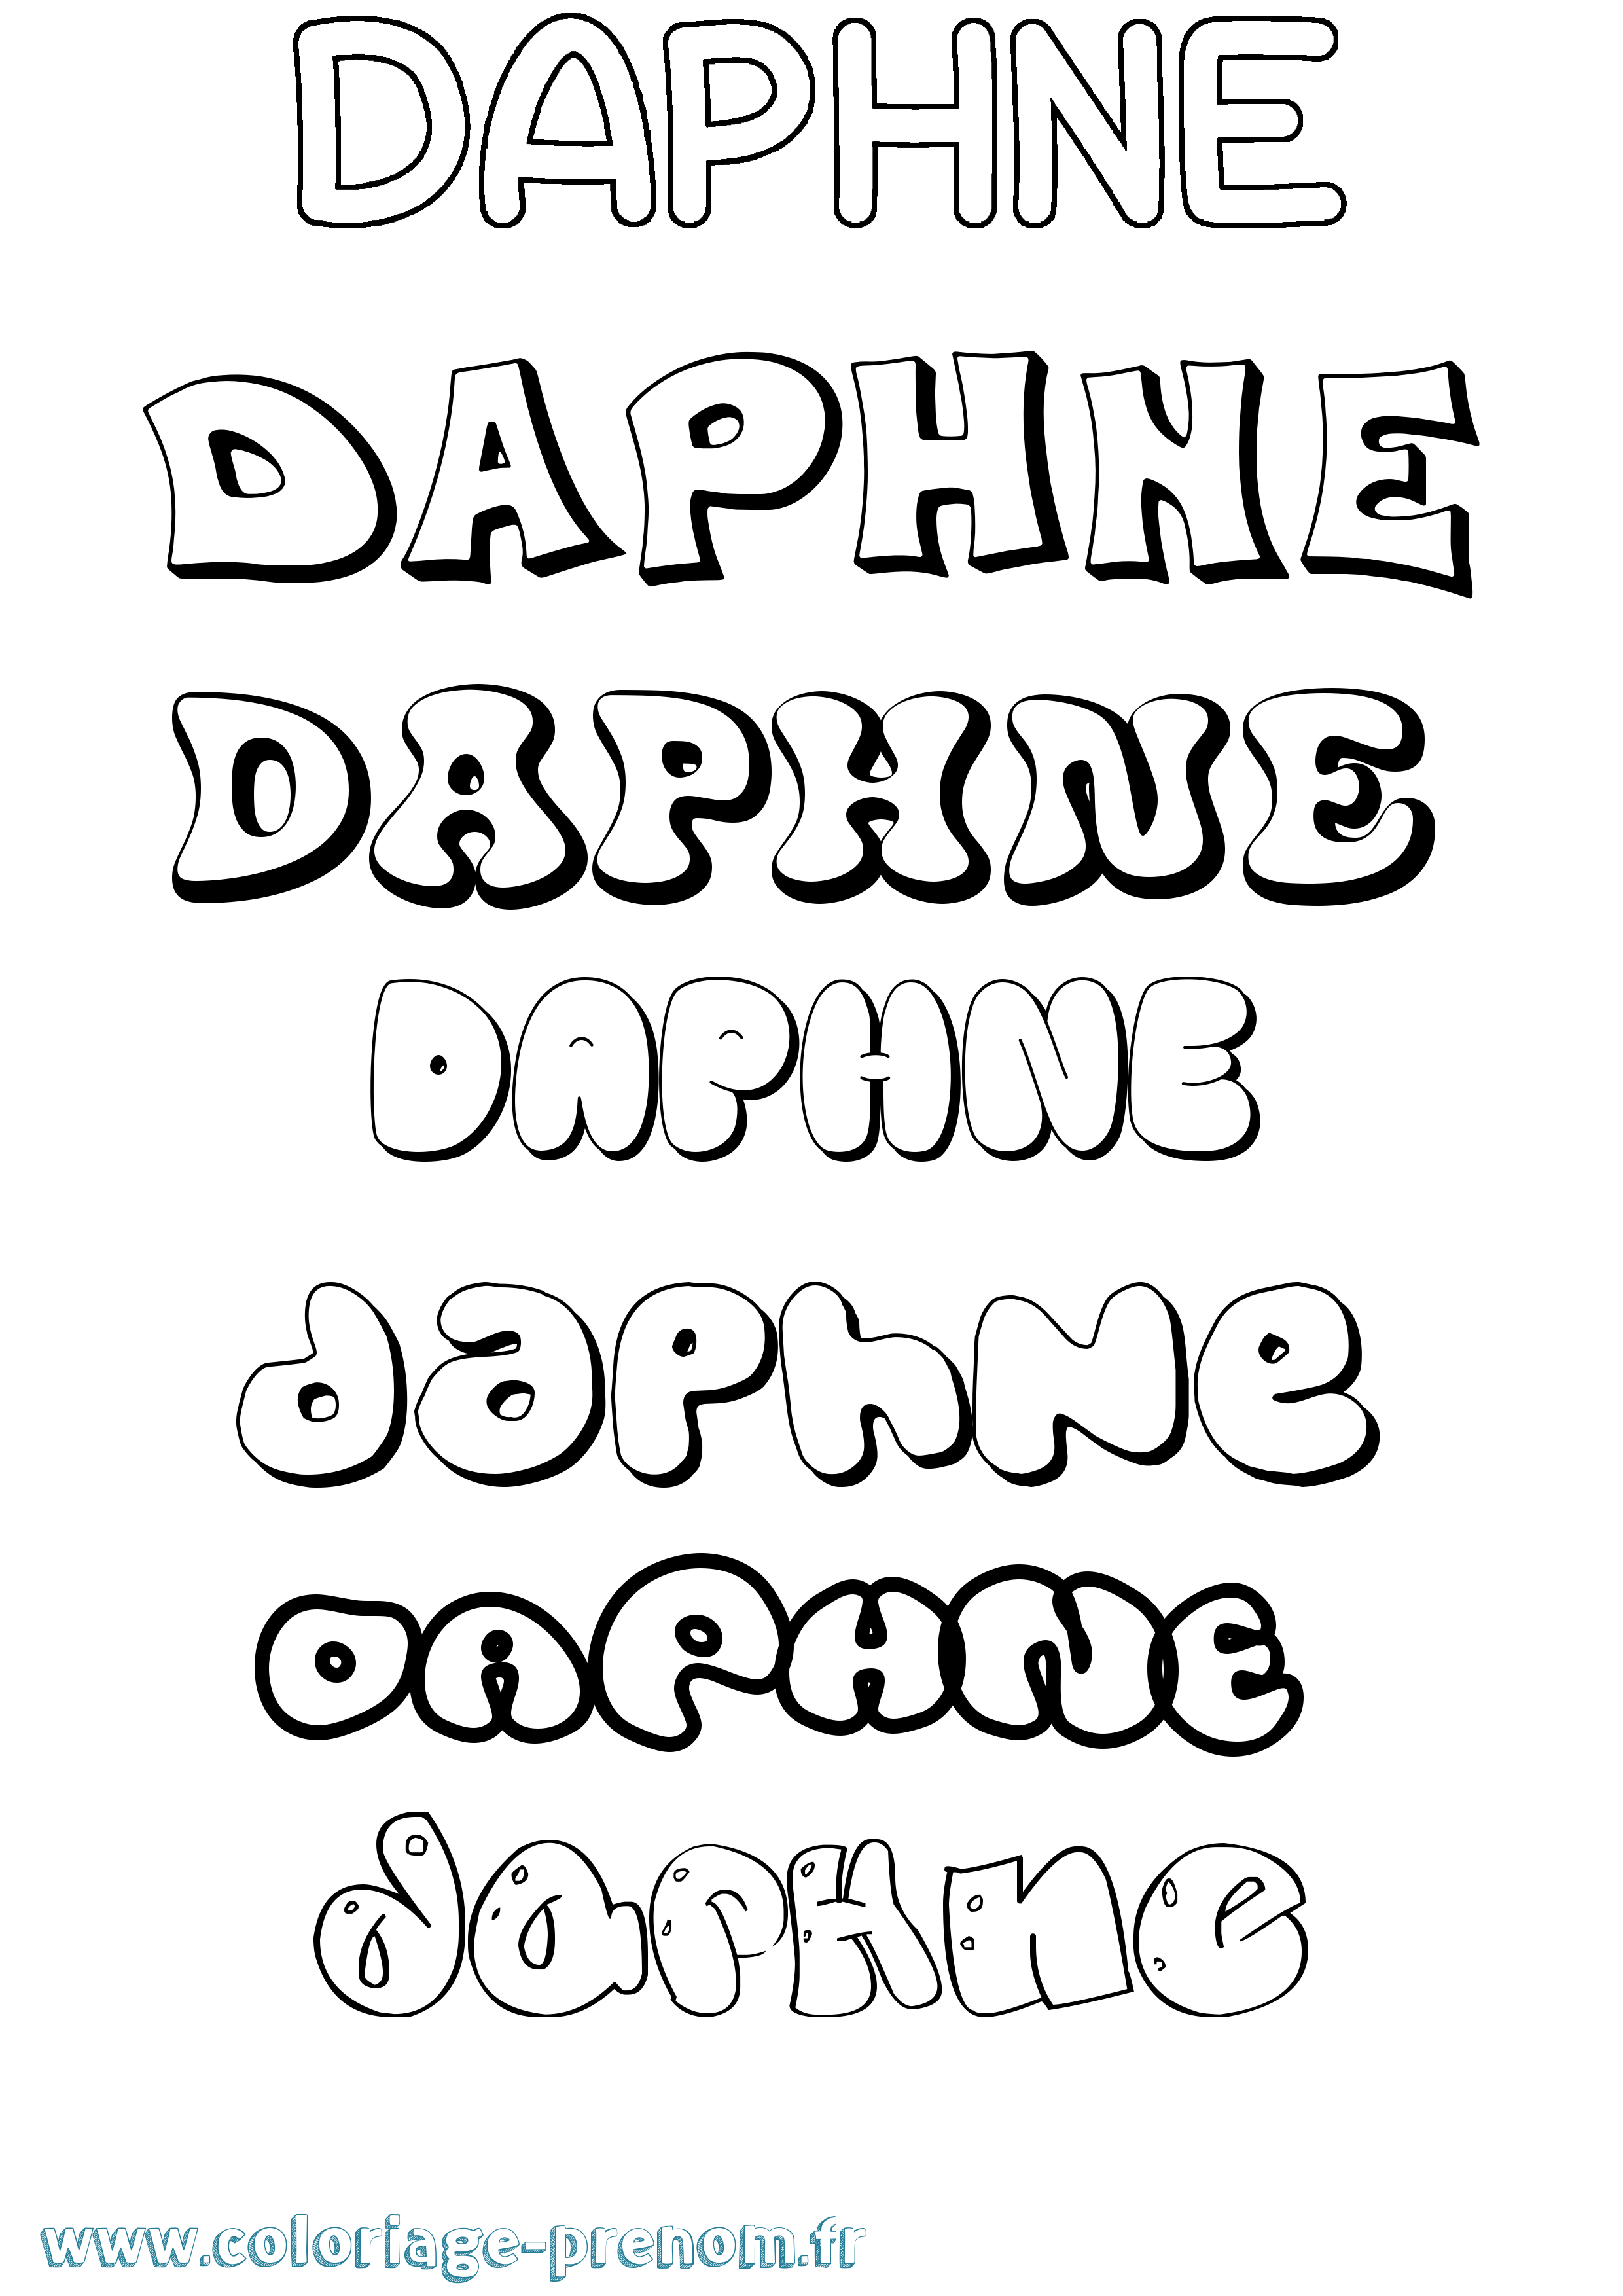 Coloriage prénom Daphne Bubble